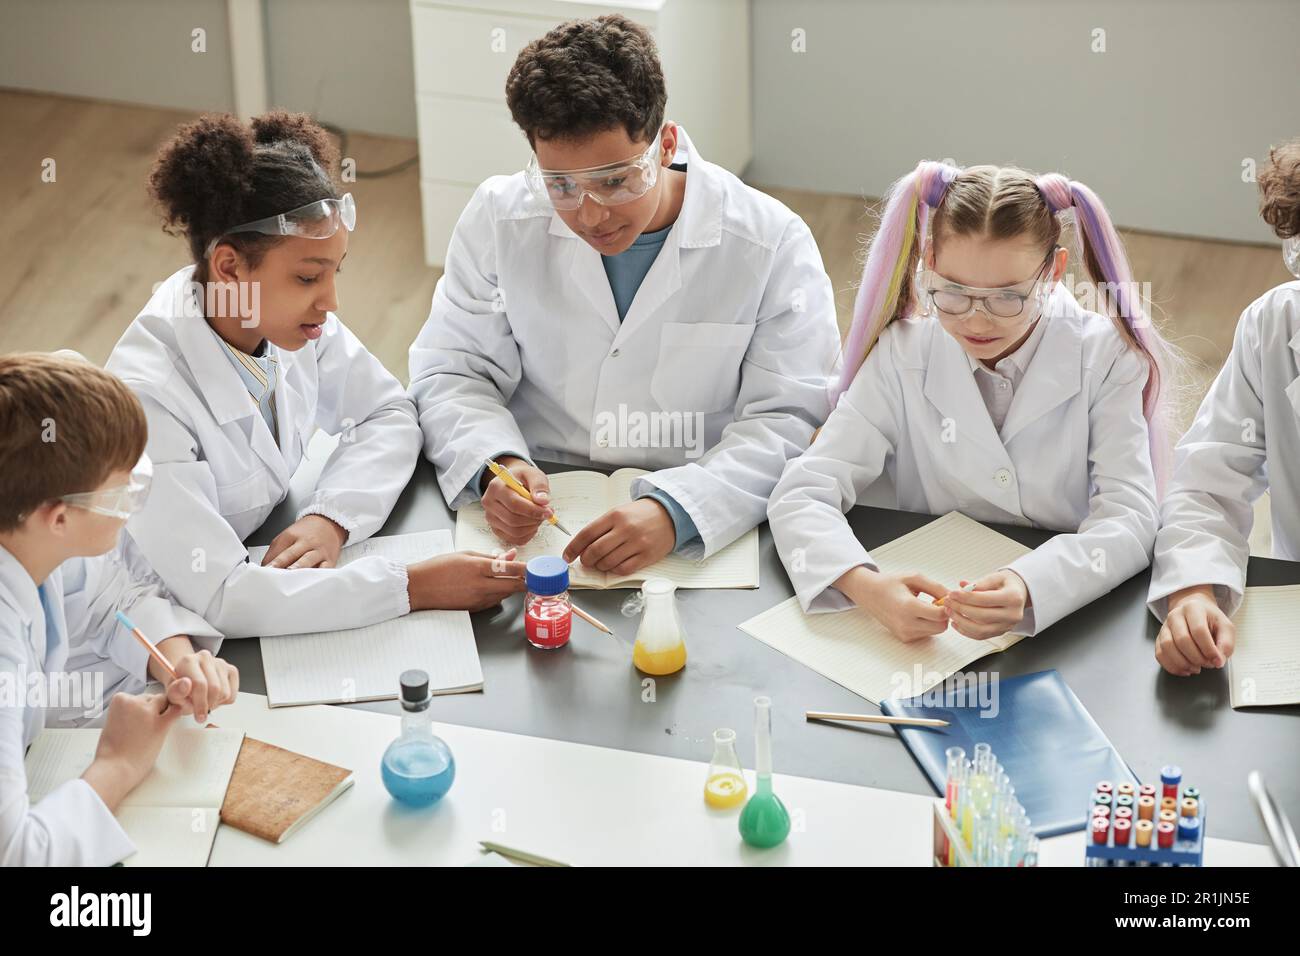 Draufsicht auf verschiedene Kindergruppen, die während des Wissenschaftskurses in der Schule Experimente durchführen und Labormäntel tragen Stockfoto